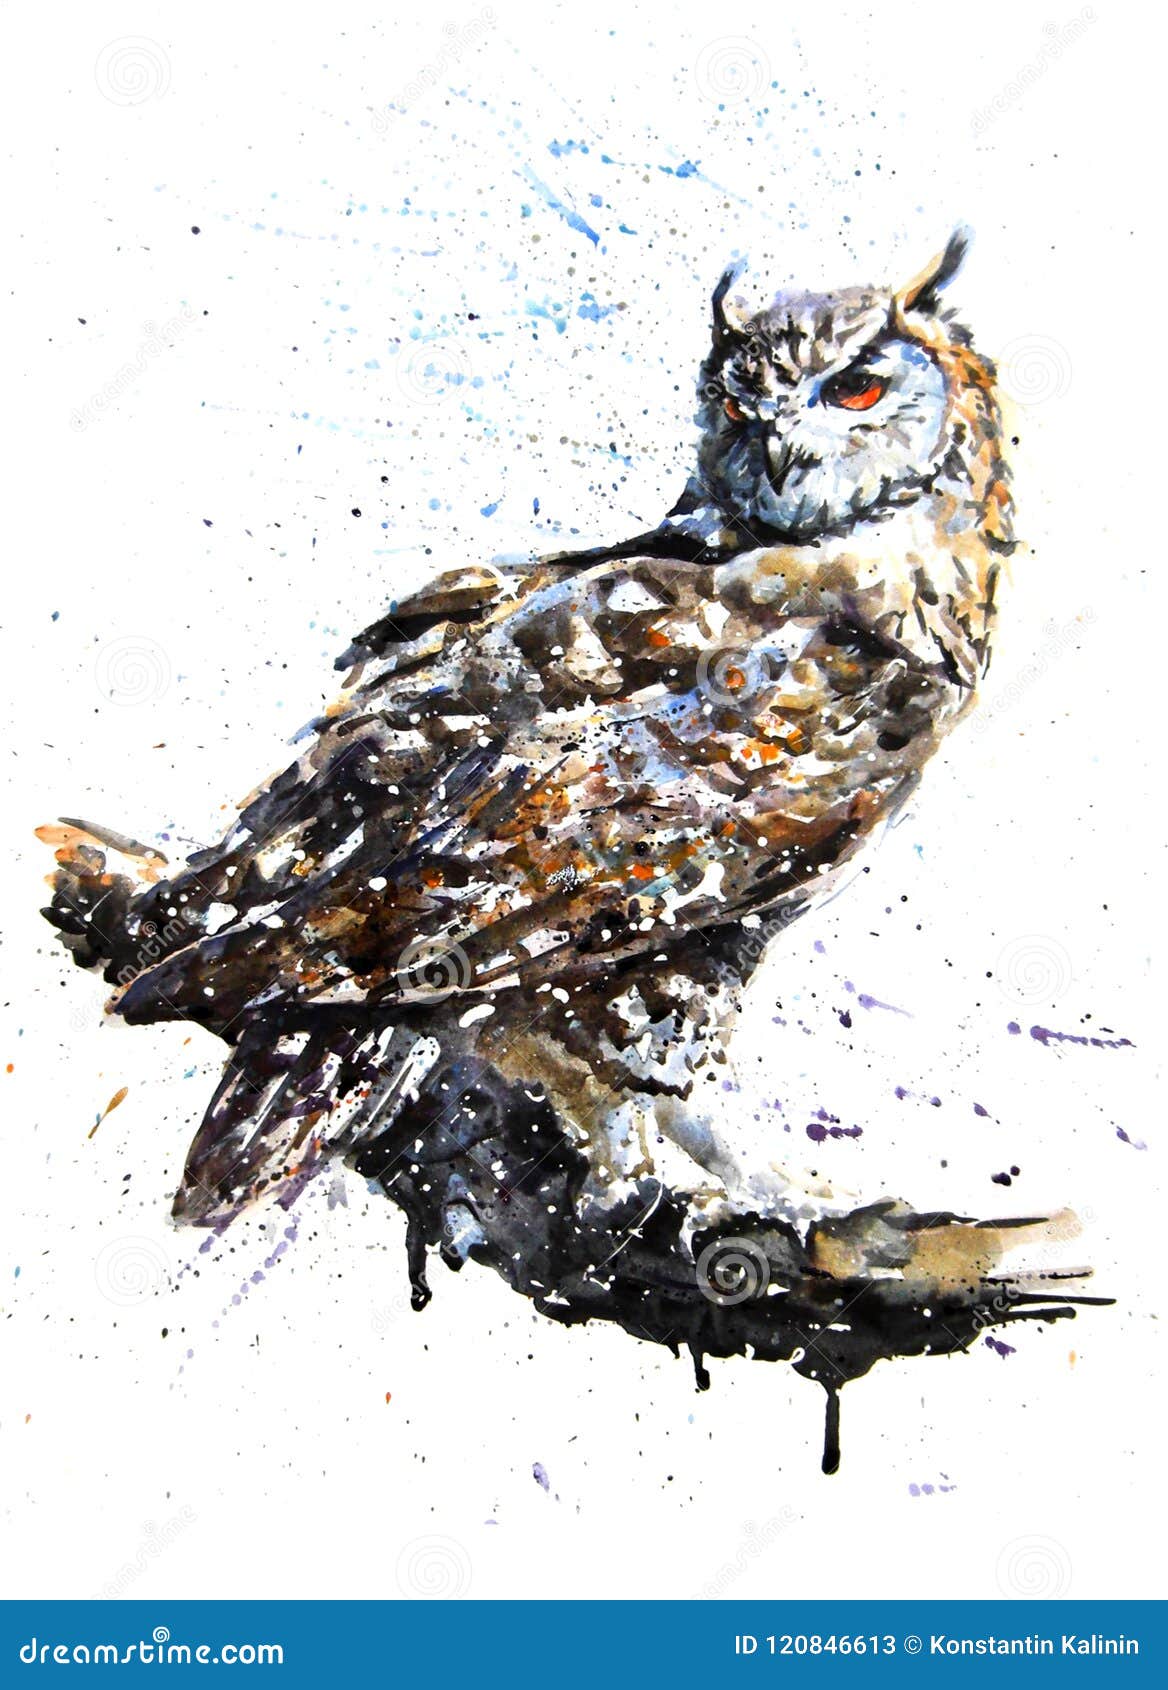 owl predator watercolor painting drawing